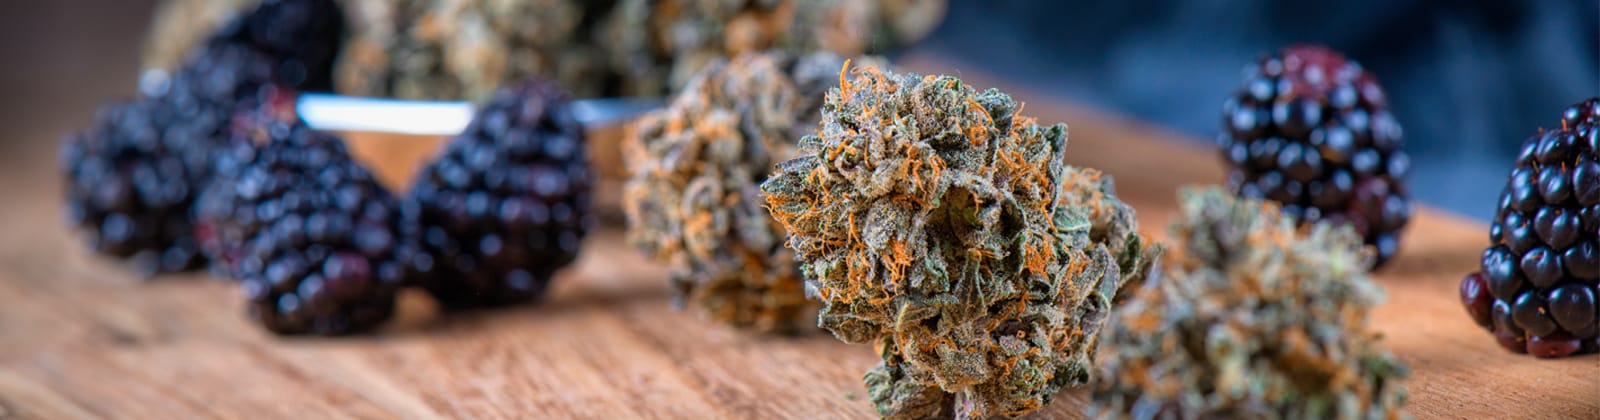 Cannabis Terpene sind für das Aroma und die Wirkung deiner Cannabis Blüten verantwortlich. Wie genau dies funktioniert erfährst du in diesem Artikel!